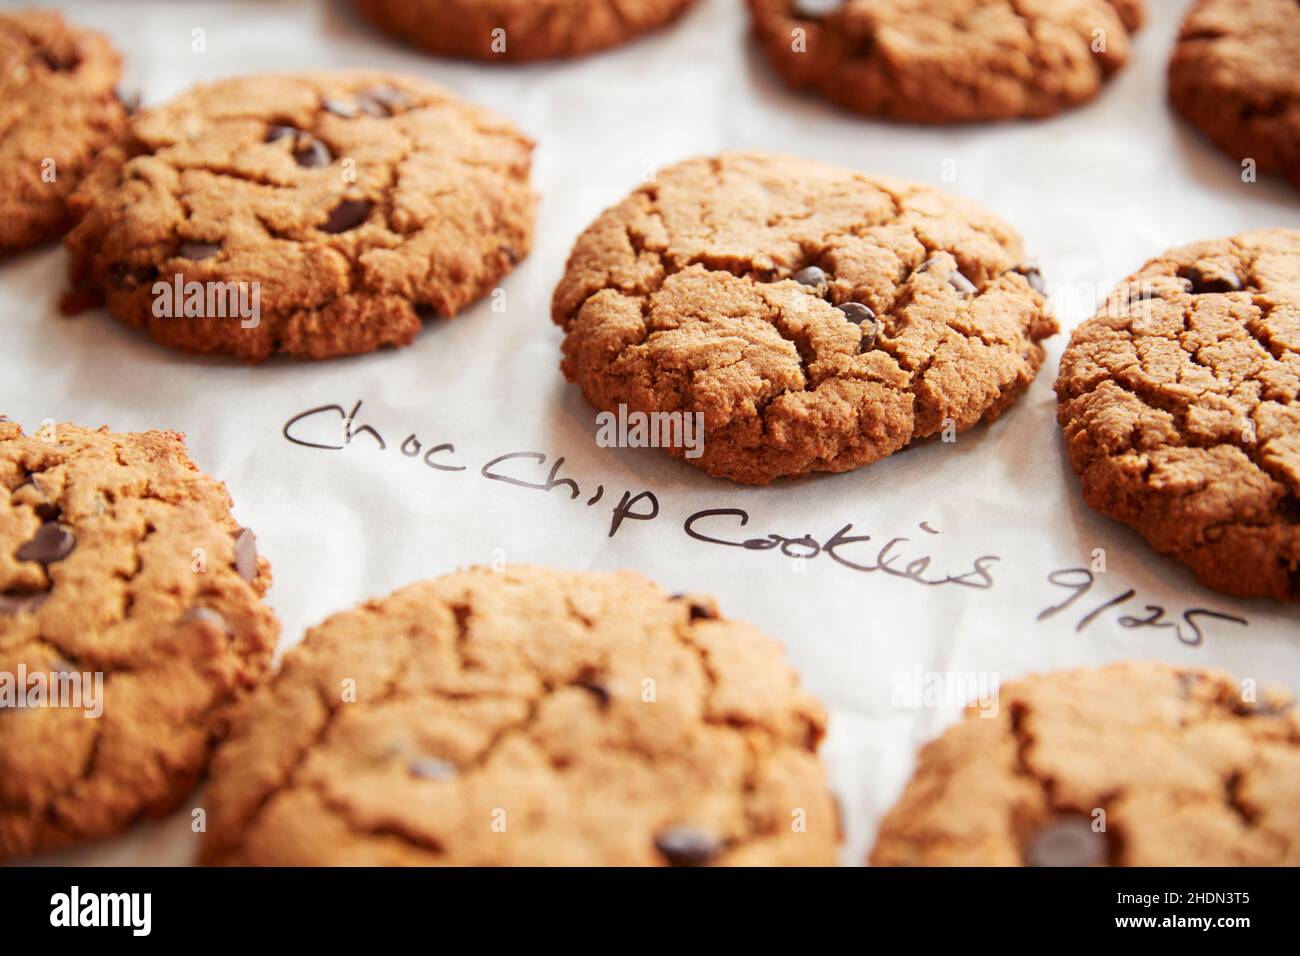 biscotti, biscotti al cioccolato, biscotti con chip di cioccolato, biscotti, biscotti al cioccolato Foto Stock